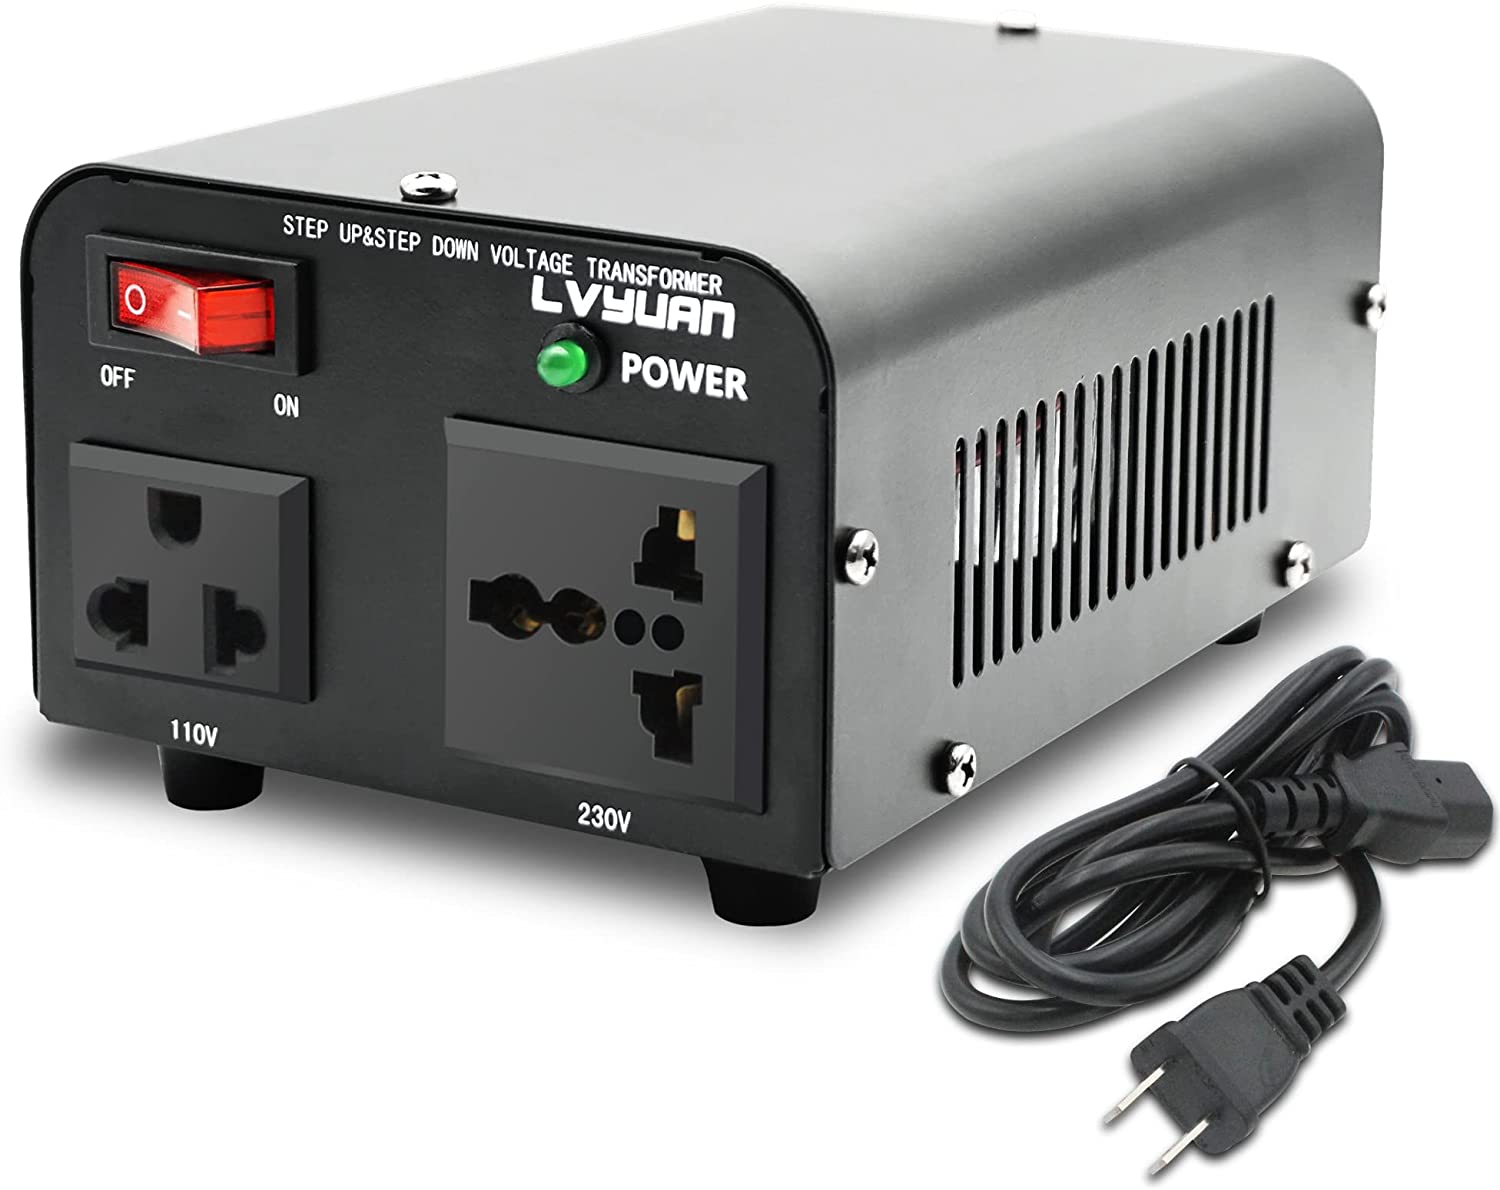 変圧器 - LVYUAN（リョクエン）公式ショップ